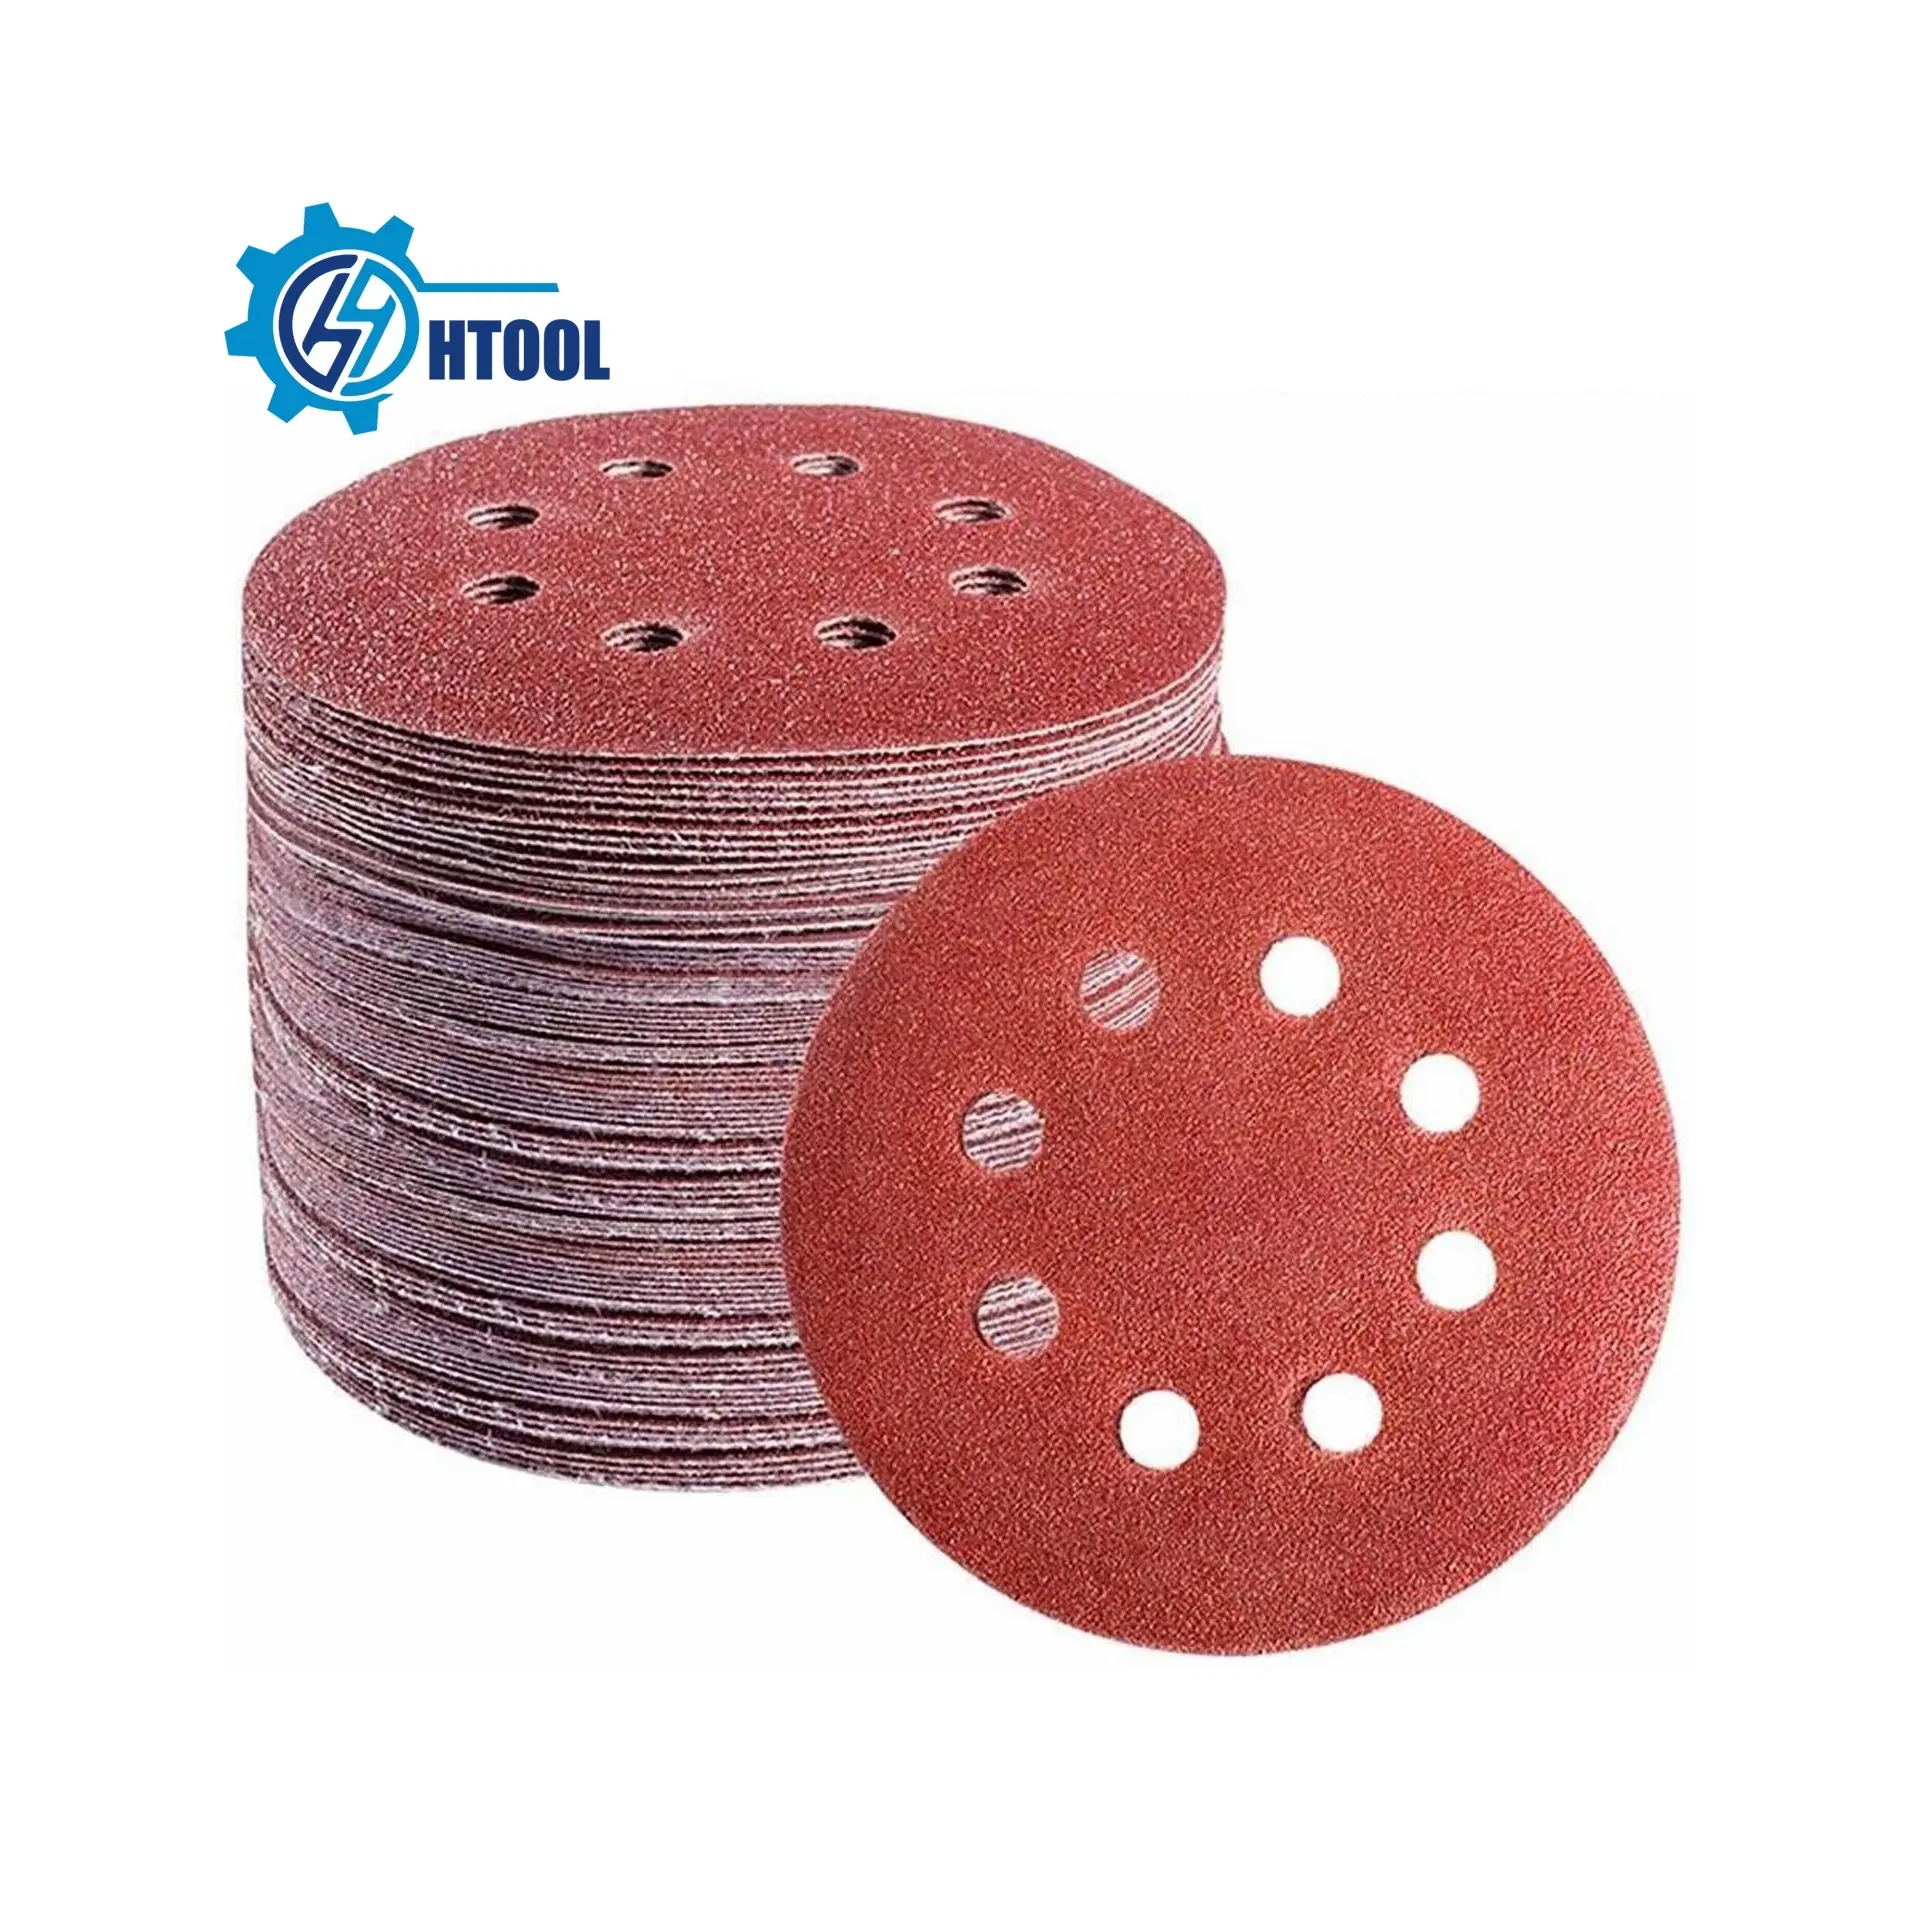 Papel de lija de 5 "y 125mm, gancho y bucle, disco de lijado redondo rojo, fibra de óxido de aluminio, 8 agujeros, papel de lija